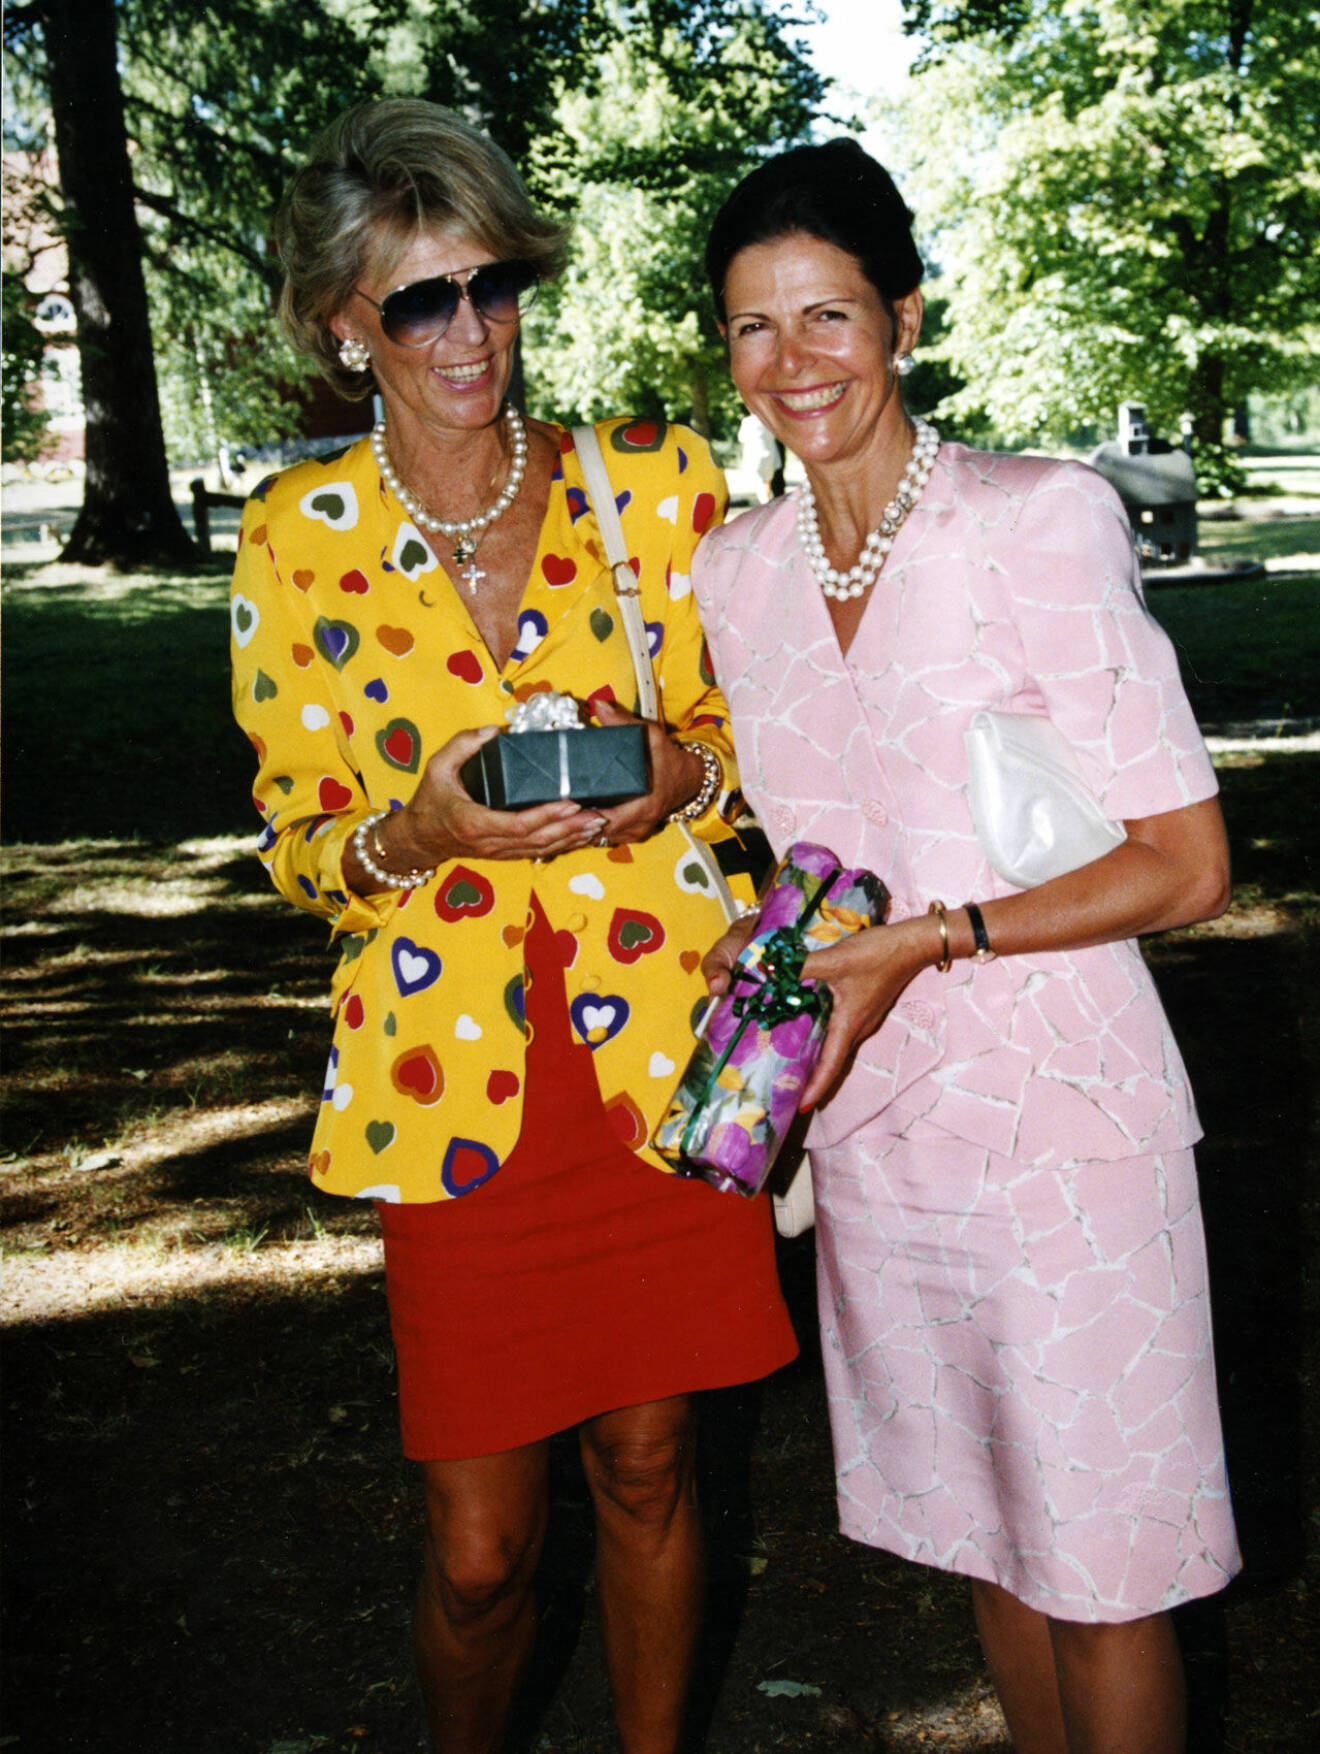 Prinsessan Birgitta i drottning Silvias röda kjol under prins Carl Philips konfirmation 1994.